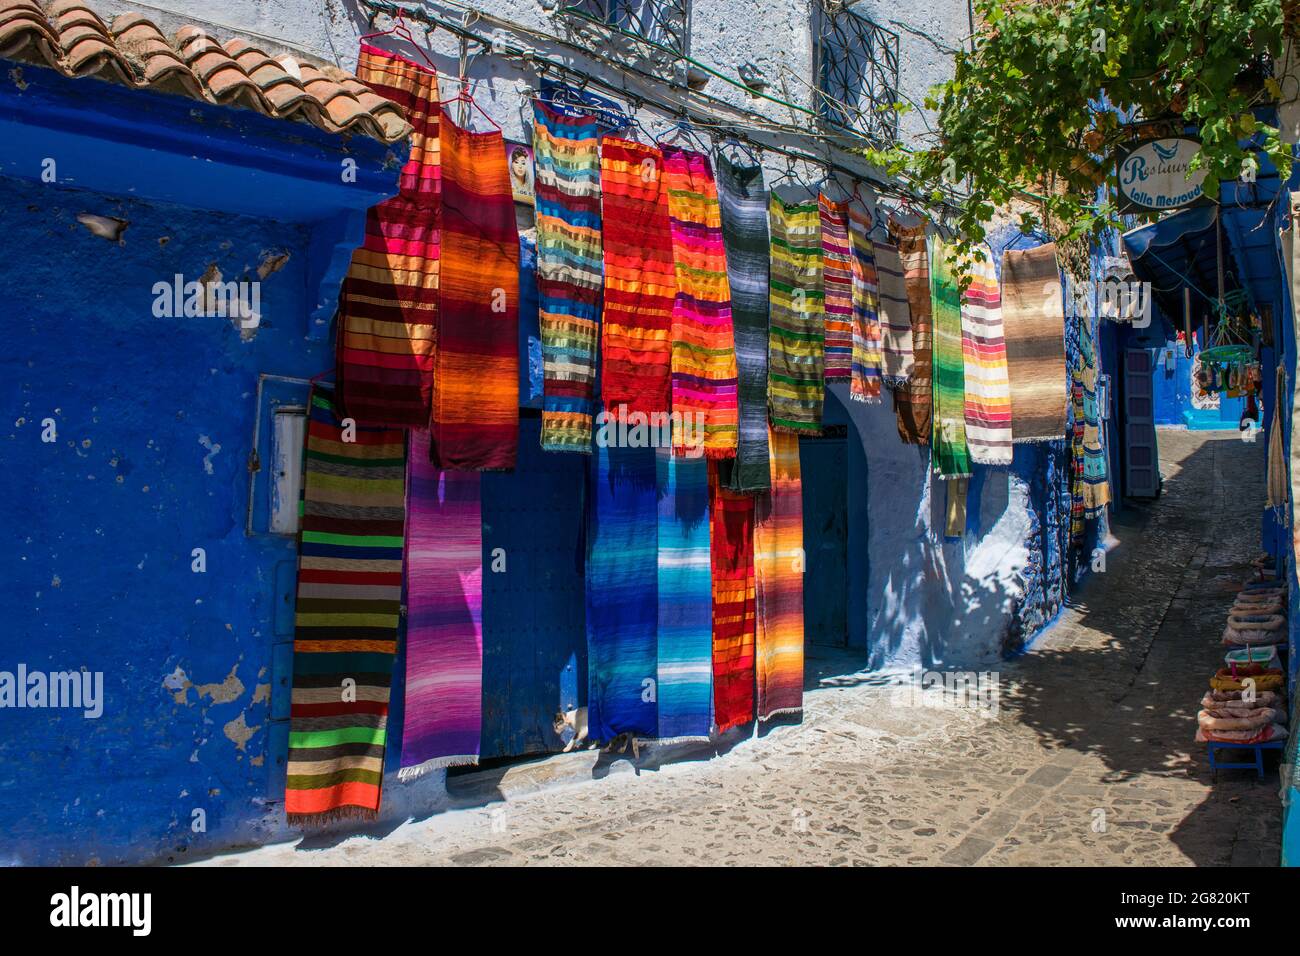 CHEFCHAOUEN, MAROC - 31 août 2018 : un gros plan de tissus et de foulards colorés dans une rue étroite de la ville de Chefchaouen, Maroc Banque D'Images